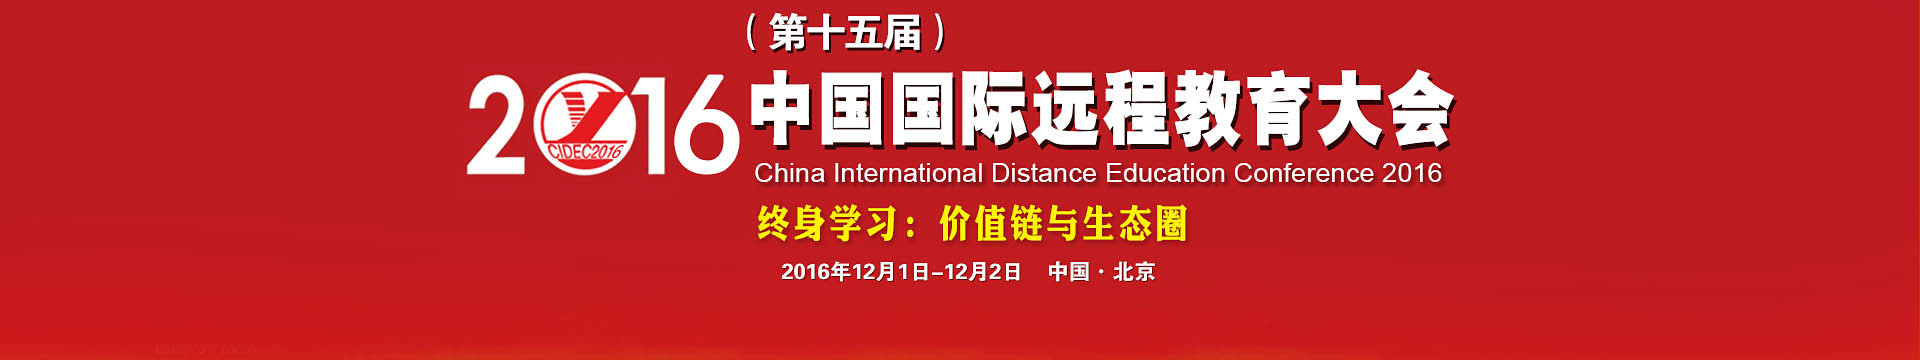 2016（第十五届） 中国国际远程教育大会